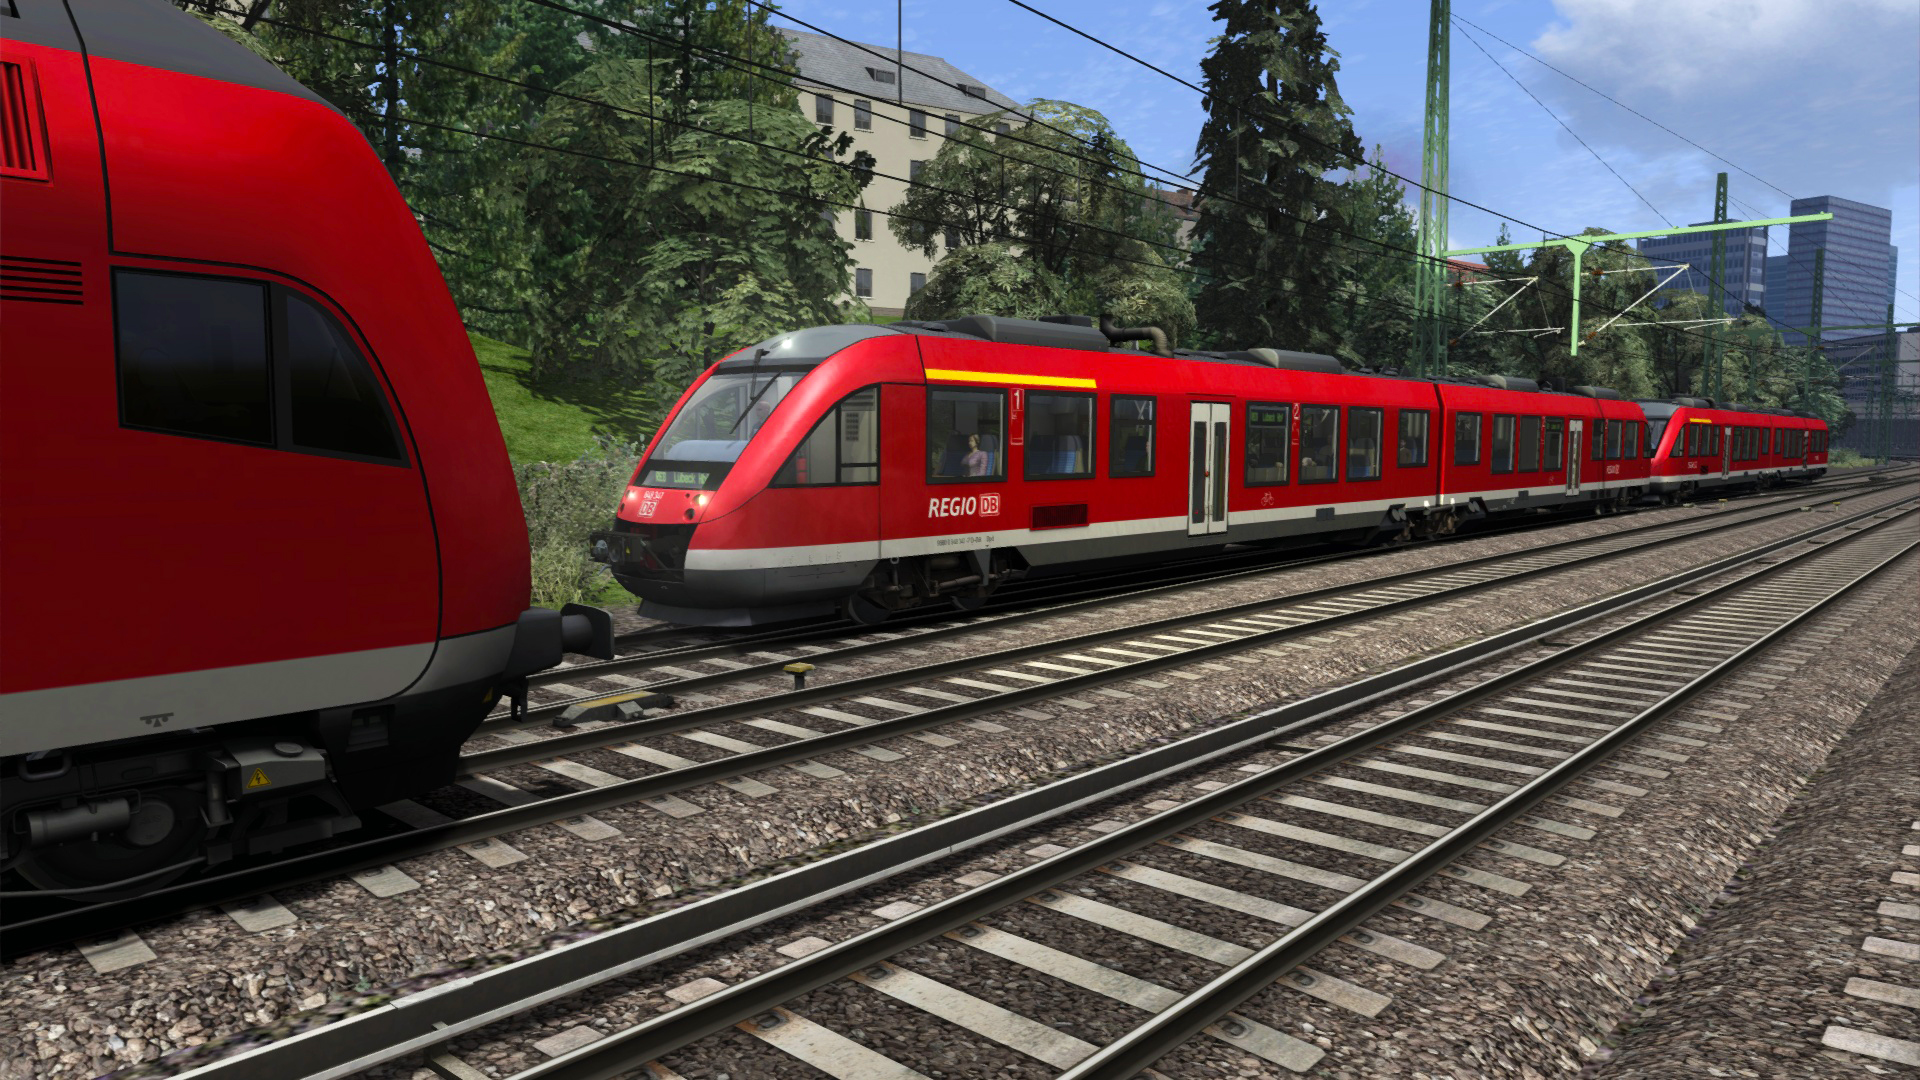 Train Simulator Classic - DB BR 648 Loco Add-On DLC Steam CD Key